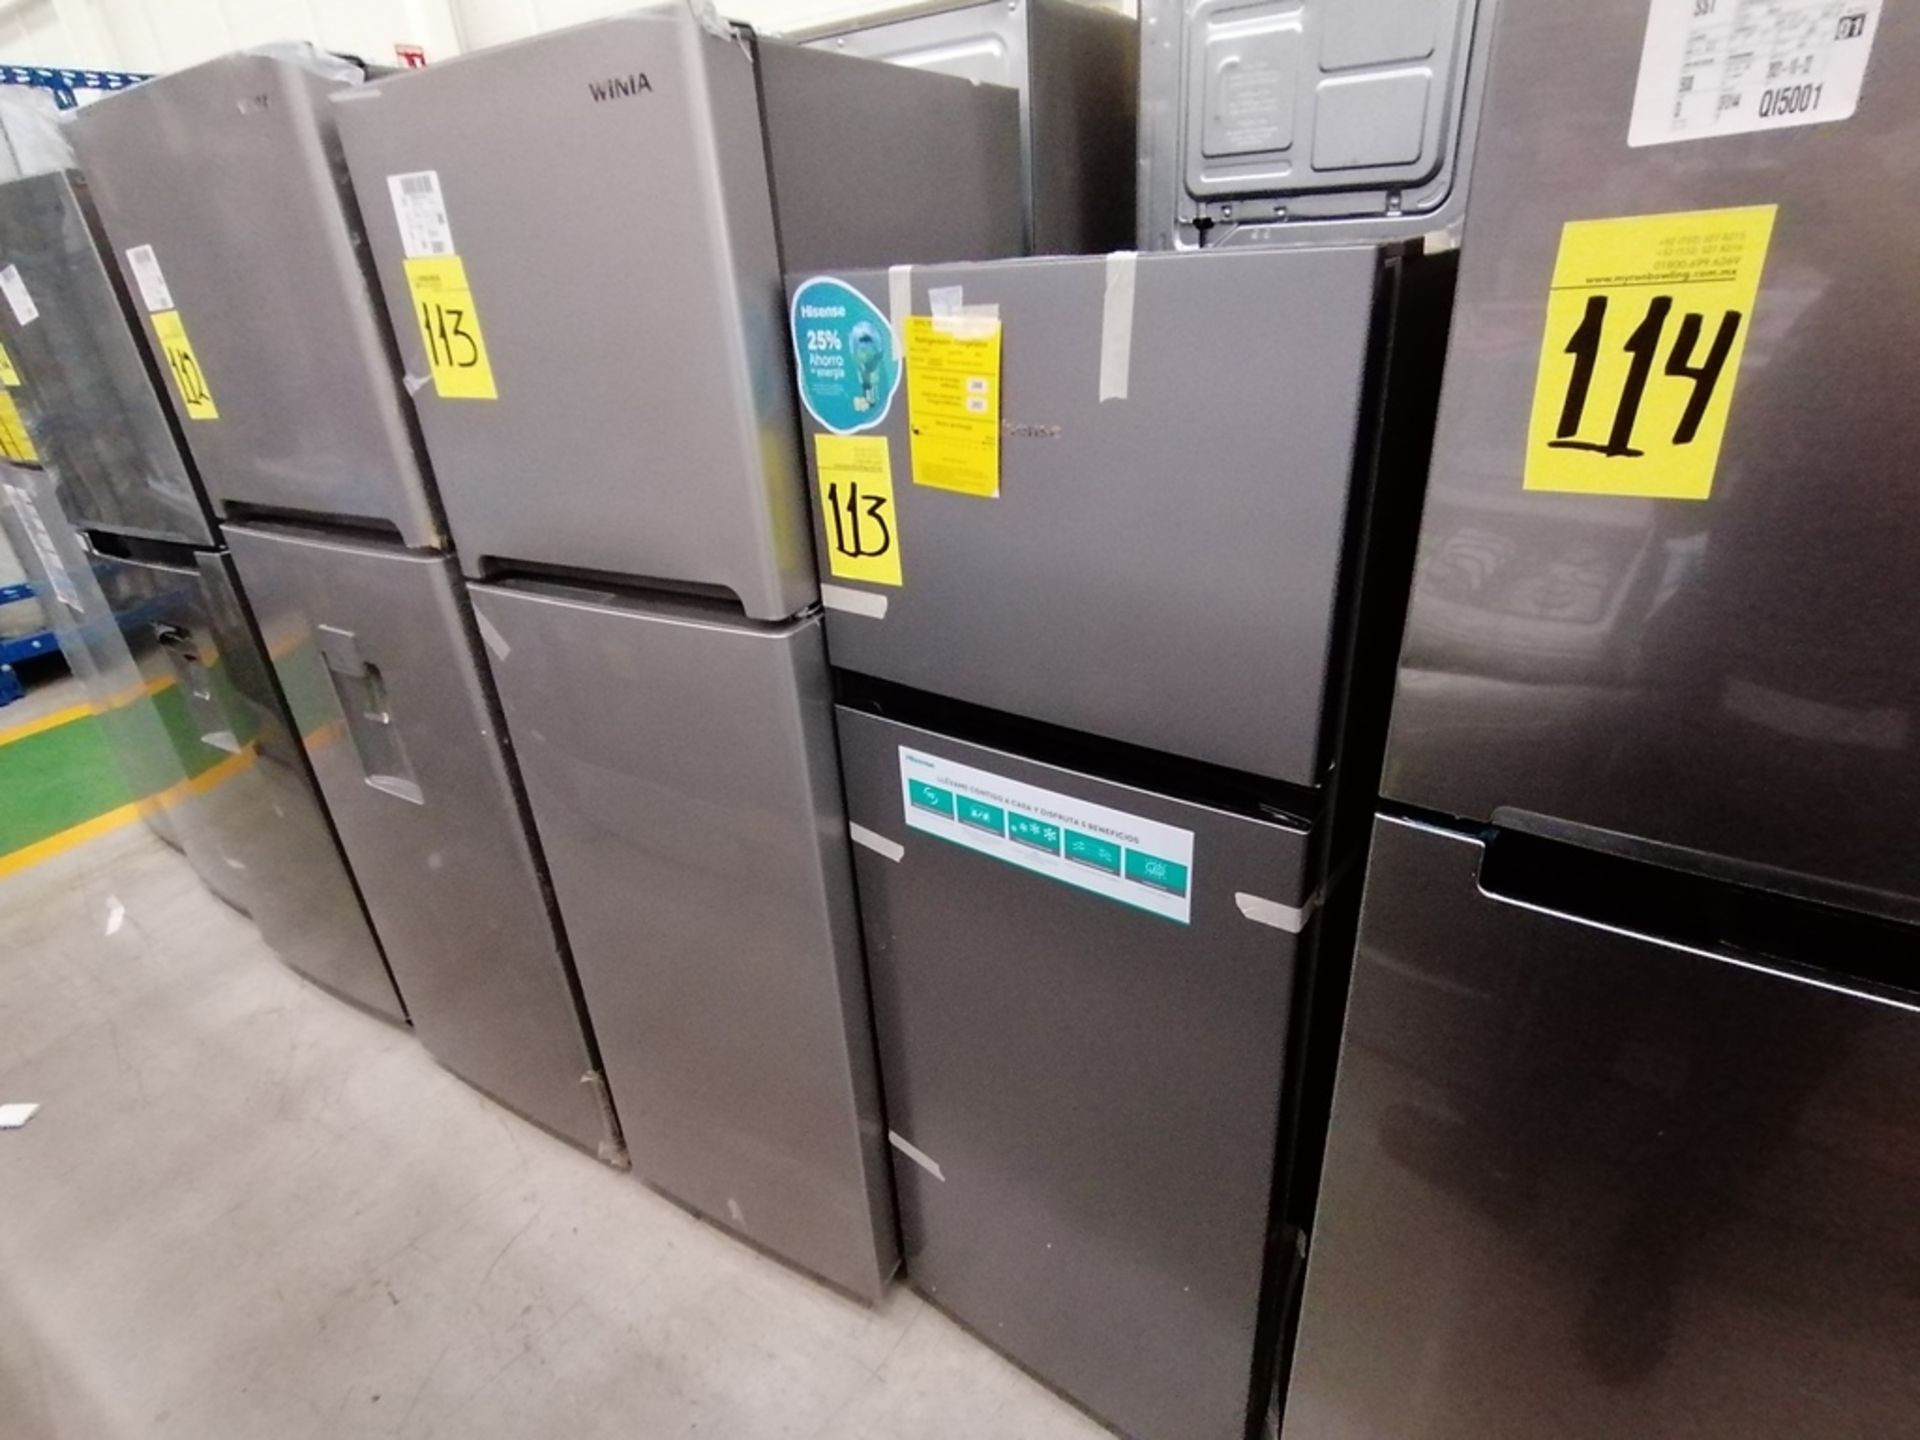 Lote de 2 refrigeradores incluye: 1 Refrigerador, Marca Winia, Modelo DFR25210GN, Serie MR21ZN08401